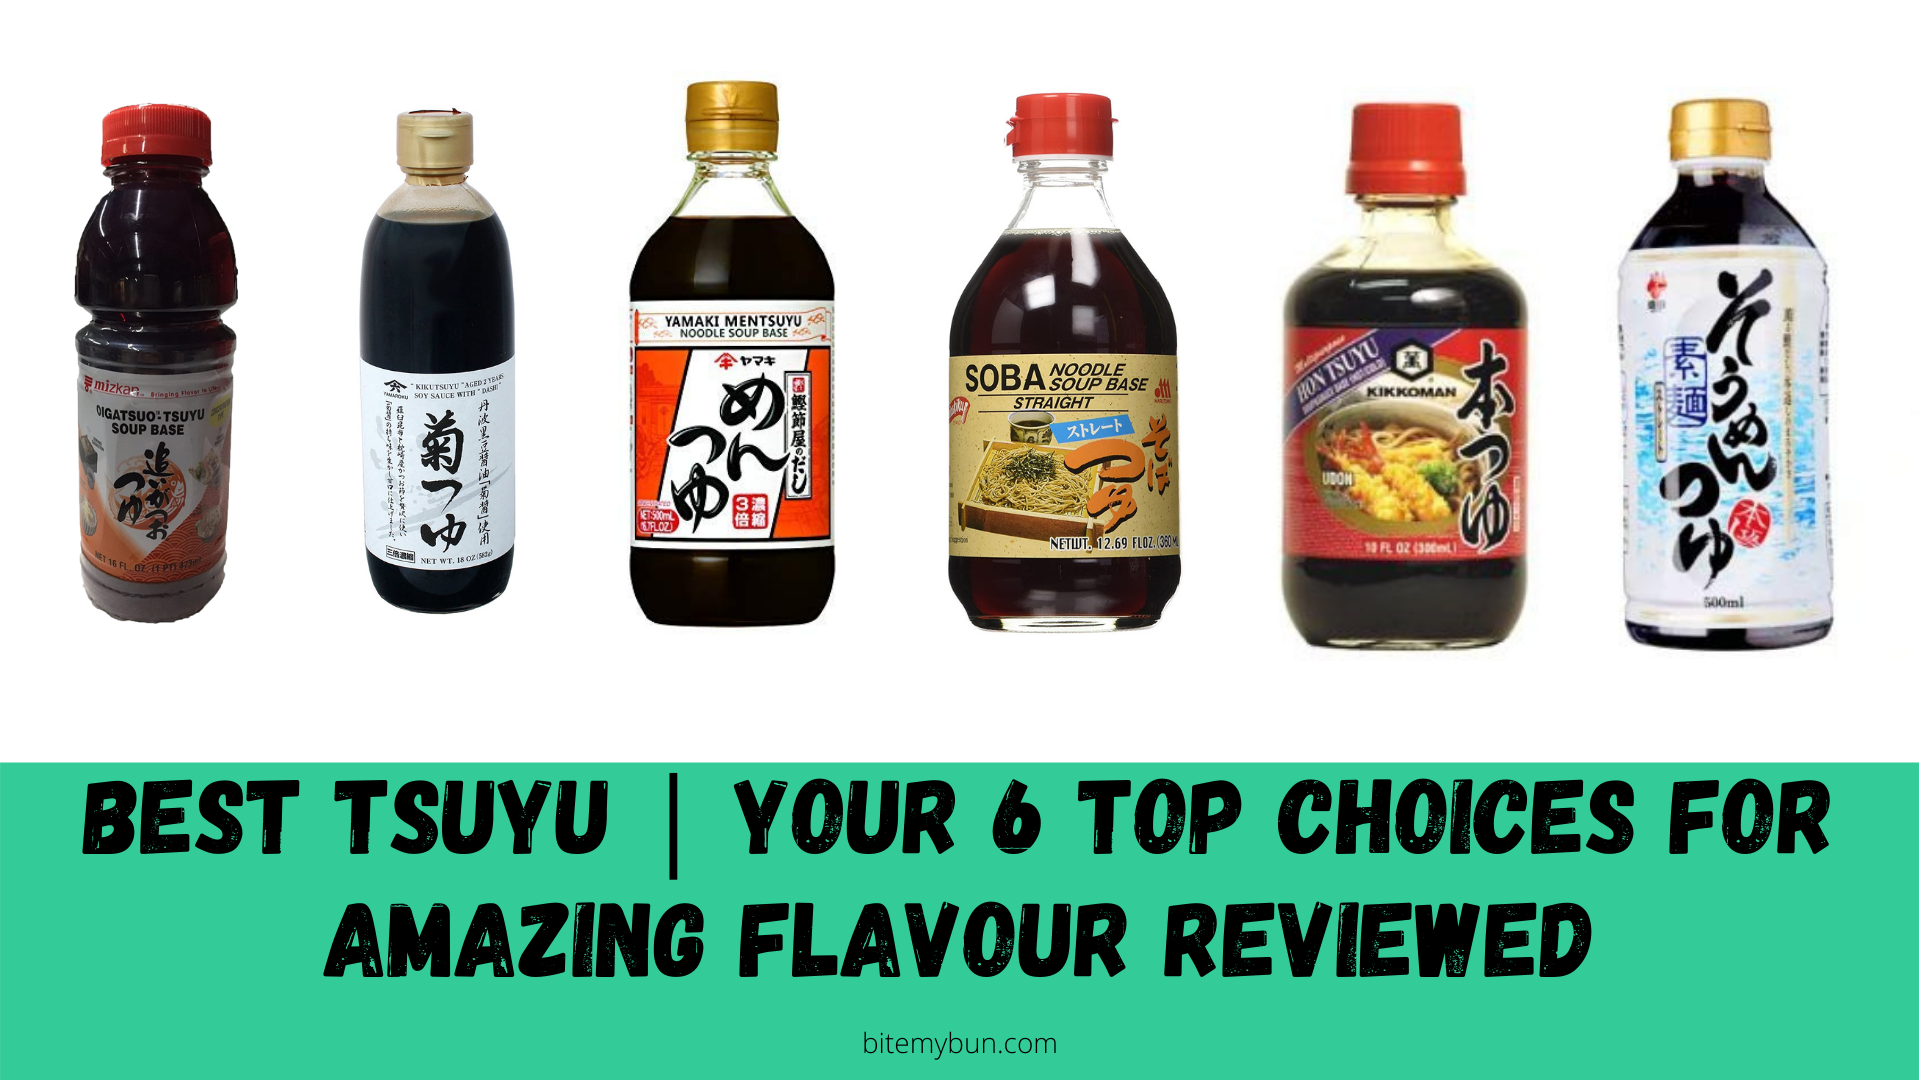 Meilleur tsuyu | Vos 6 meilleurs choix pour une saveur incroyable examinés